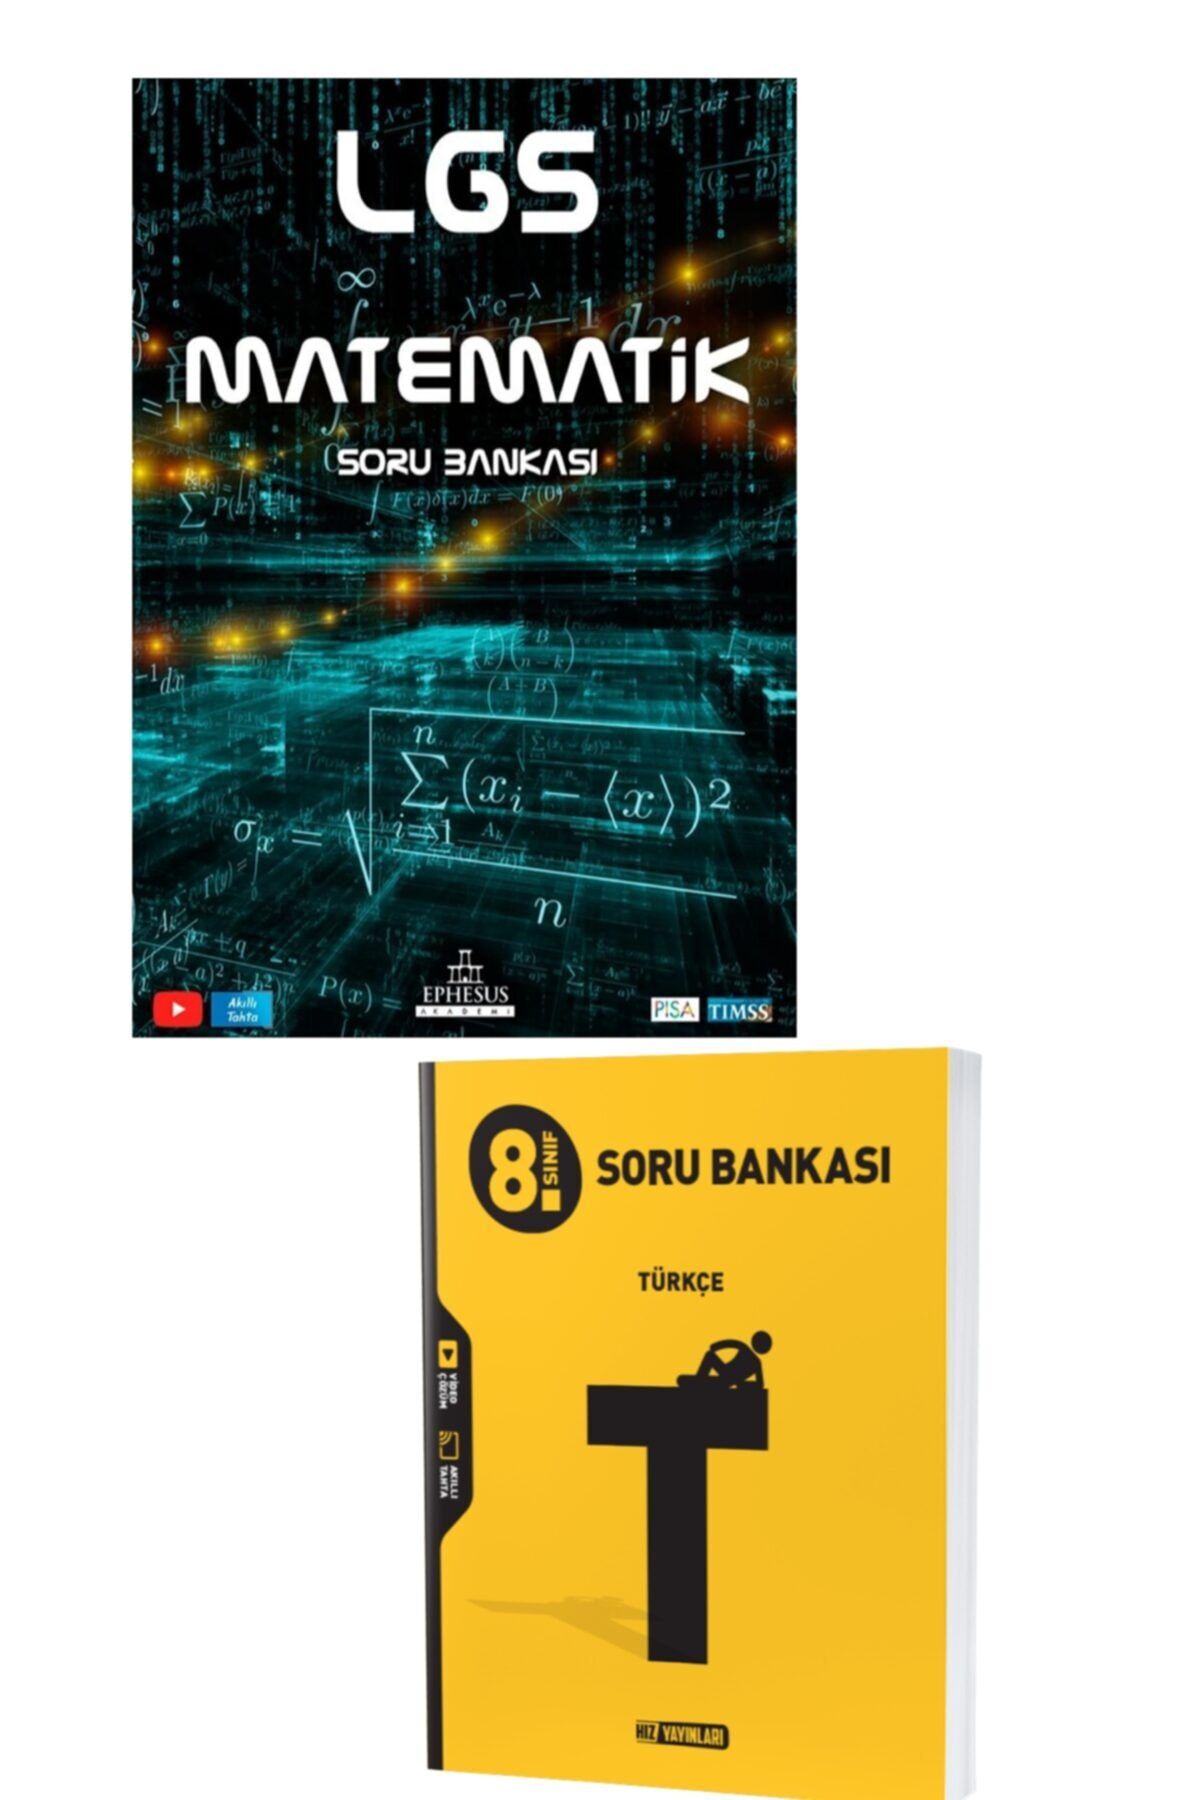 Ephesus Yayınları 8.sınıf Matematik Ve Hız Yayınları 8.sınıf Türkçe Soru Bankası Seti